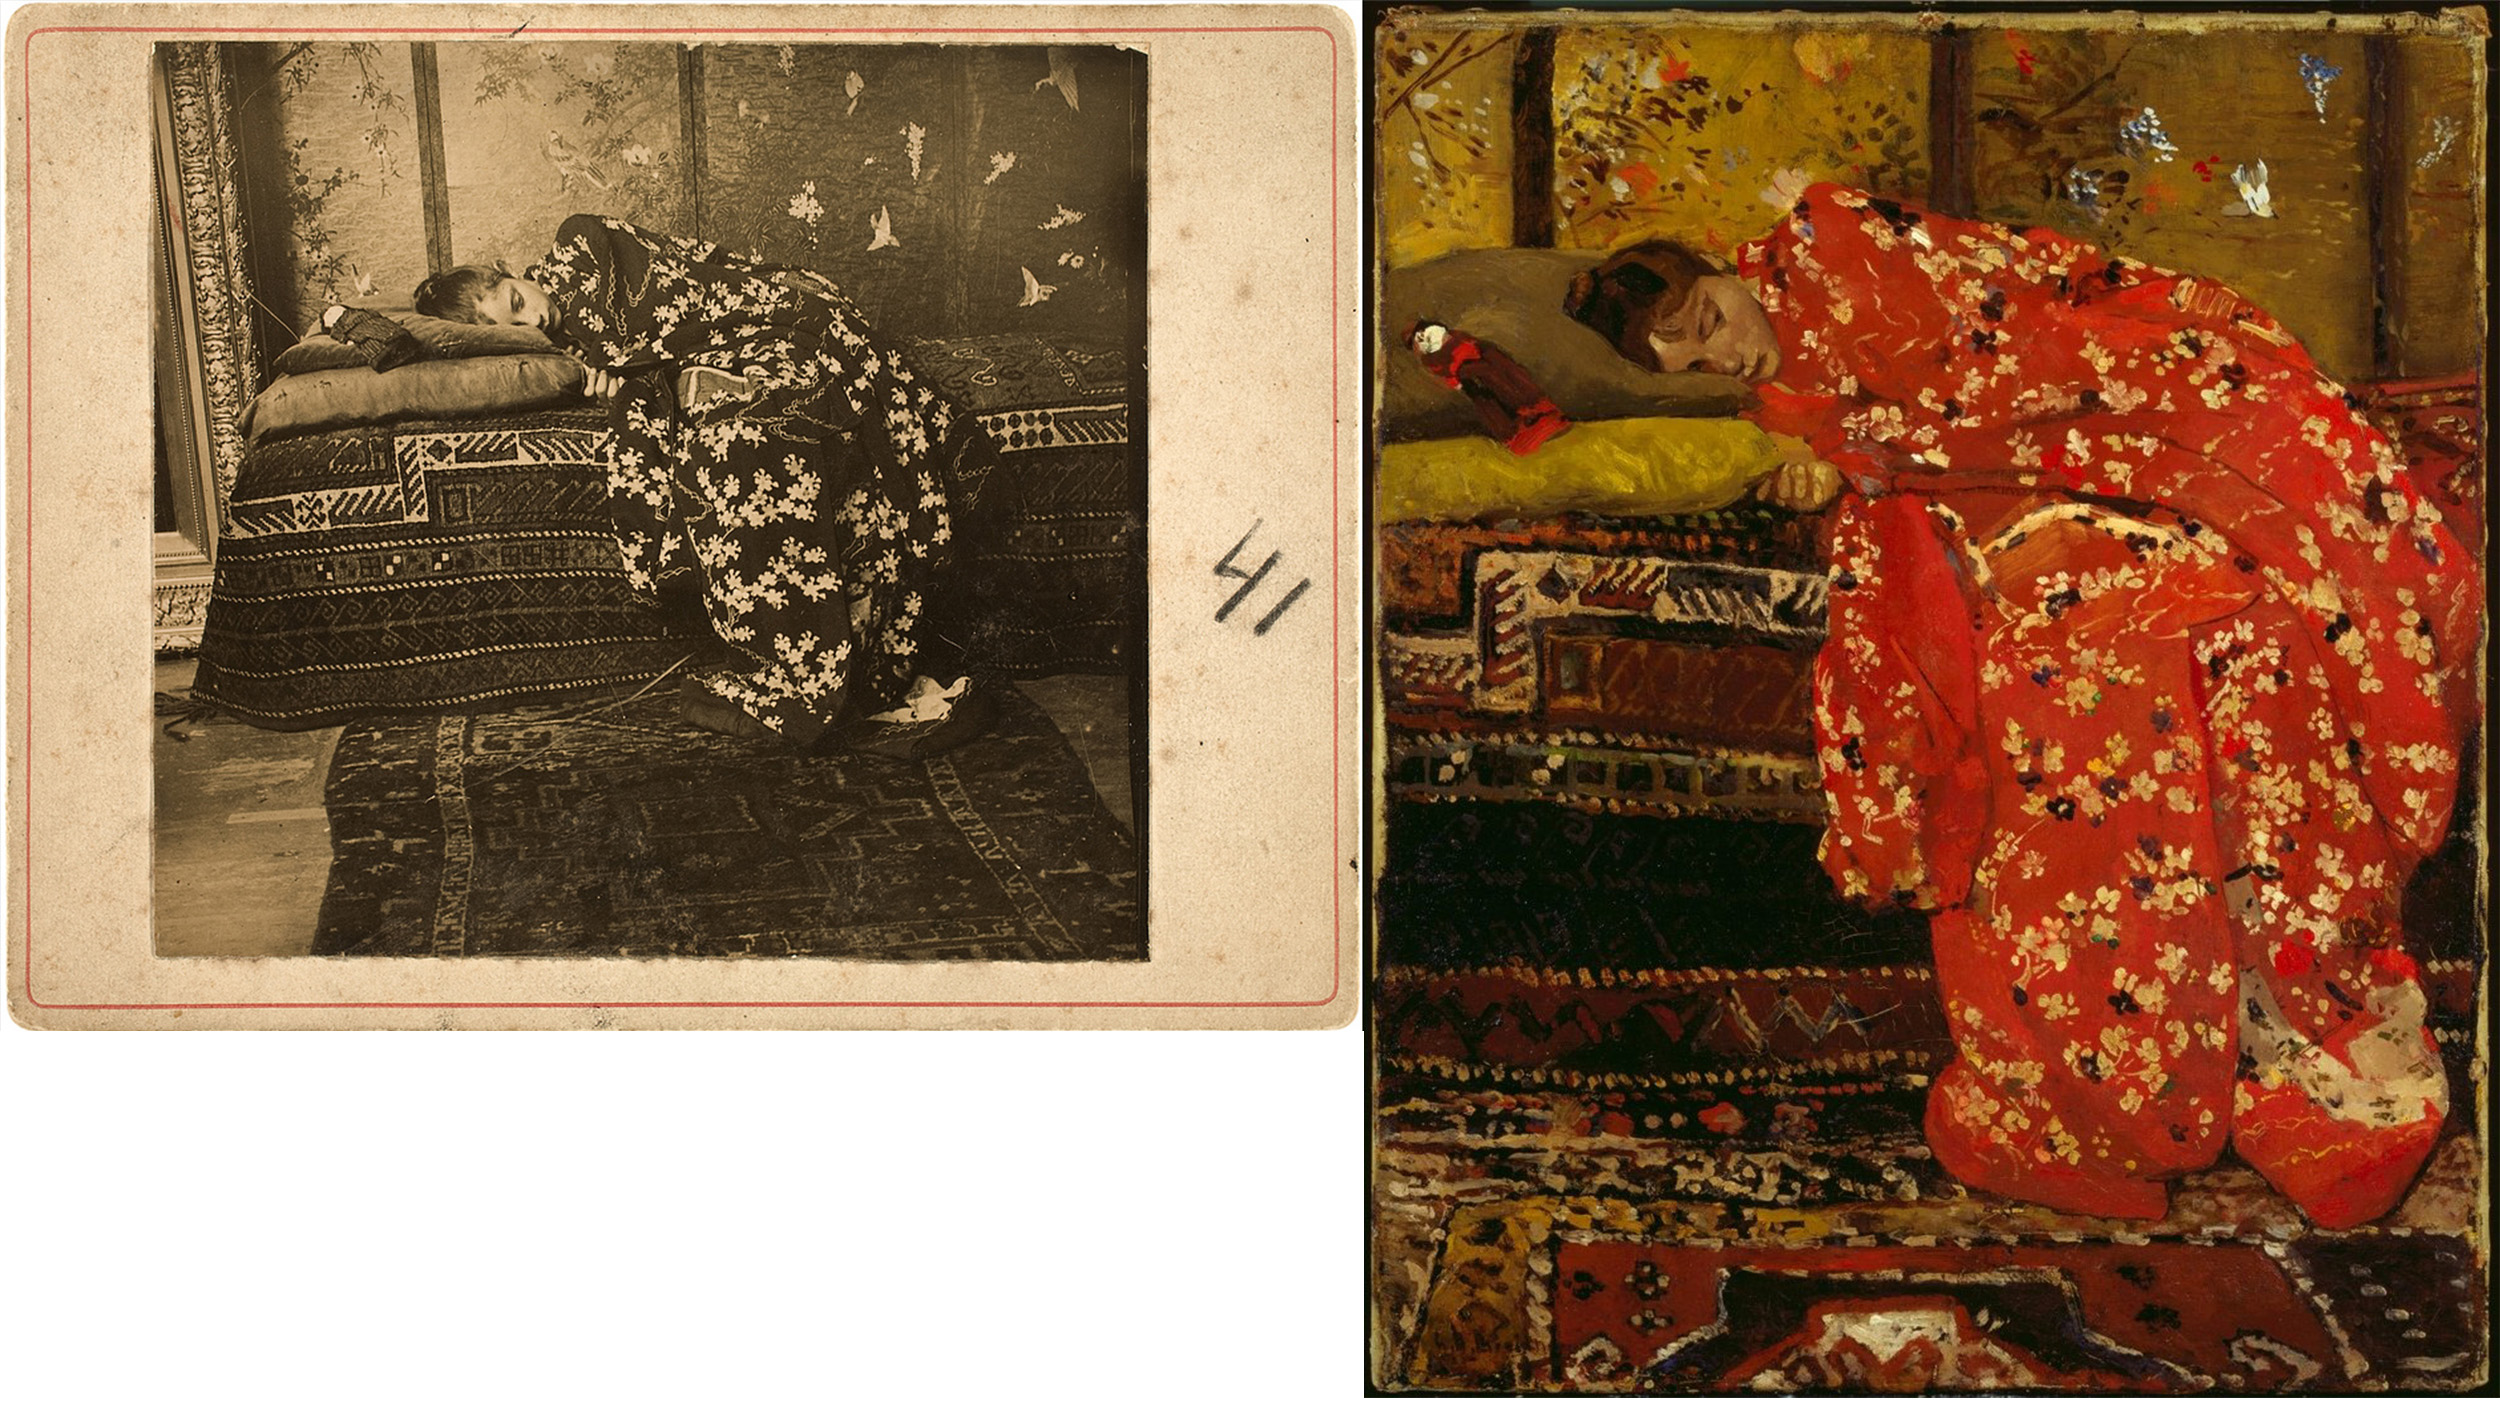 Lány egy kimonóban  by George Hendrik Breitner - 1893-95 - 31 x 39 cm, 61 x 50 cm 